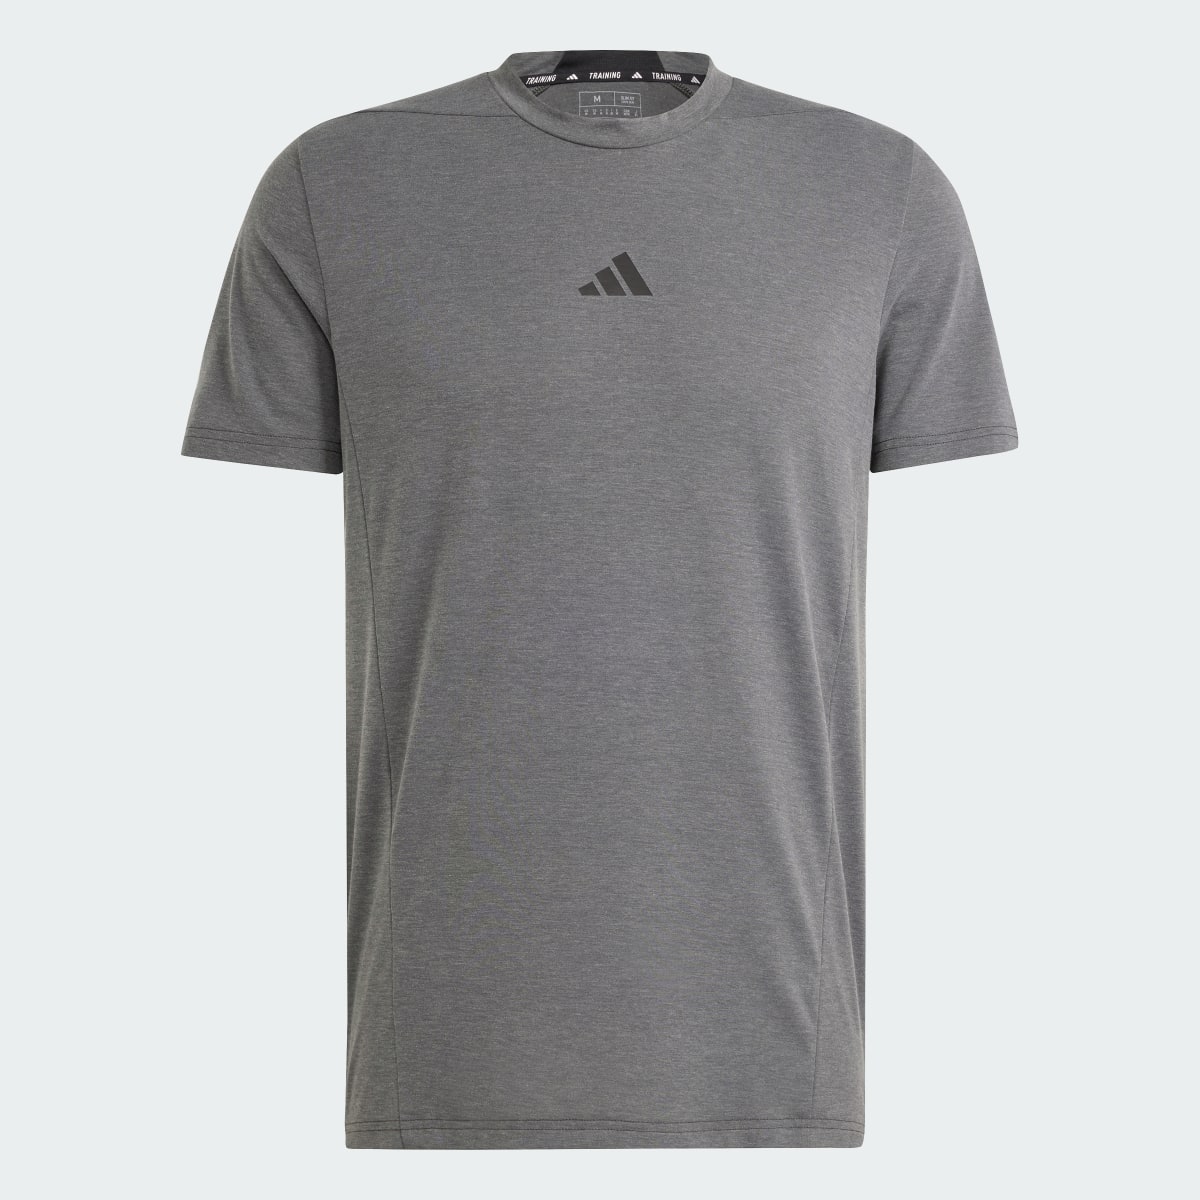 Adidas Designed for Training Antrenman Tişörtü. 6